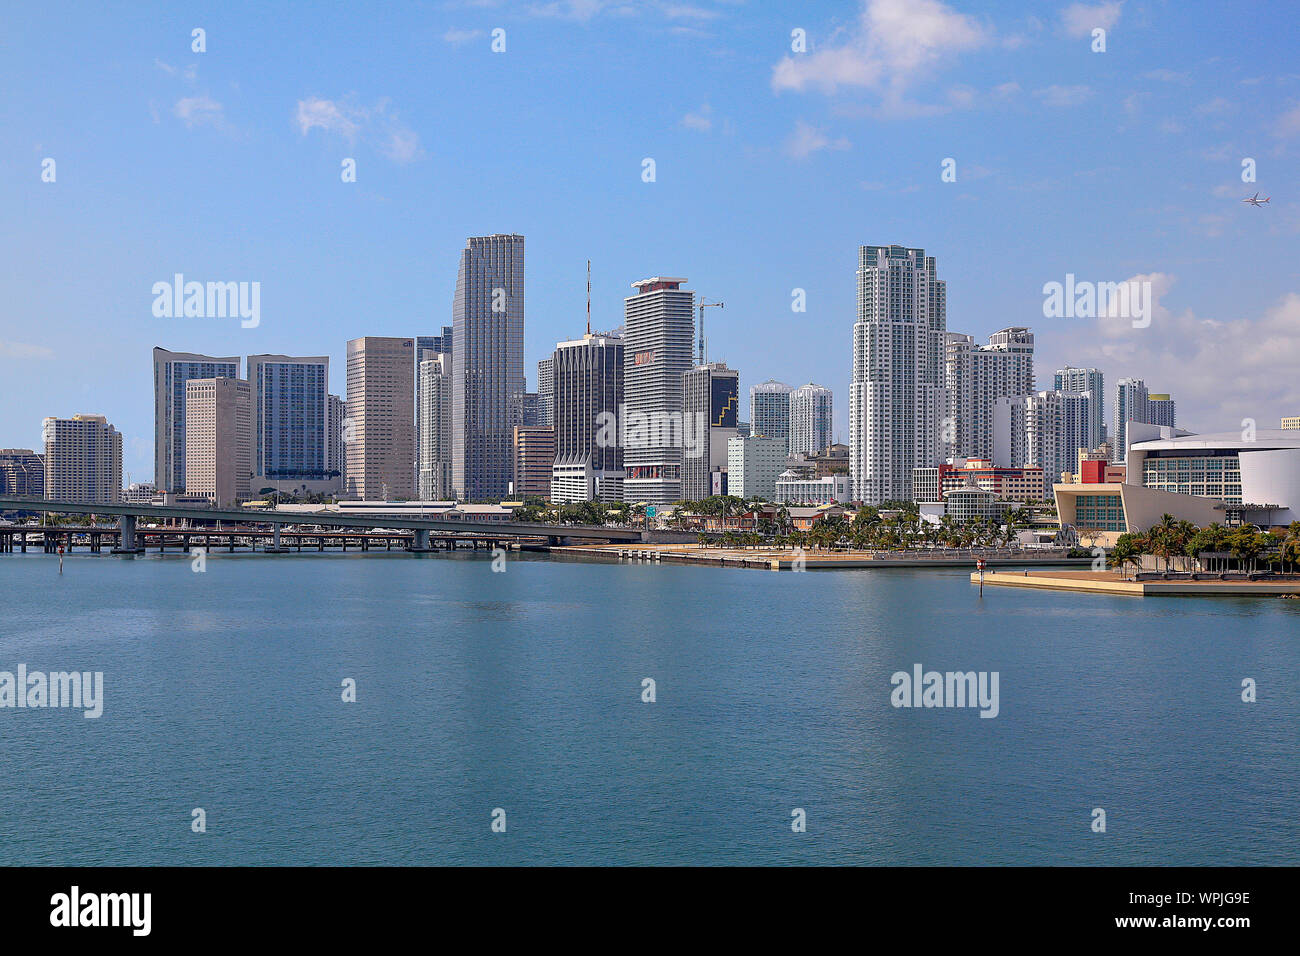 Vue sur la ville de mijamin City en ville de Miami, Miami Beach et South Beach, Florida, USA ; Amérique latine ; Amérique du Nord Banque D'Images